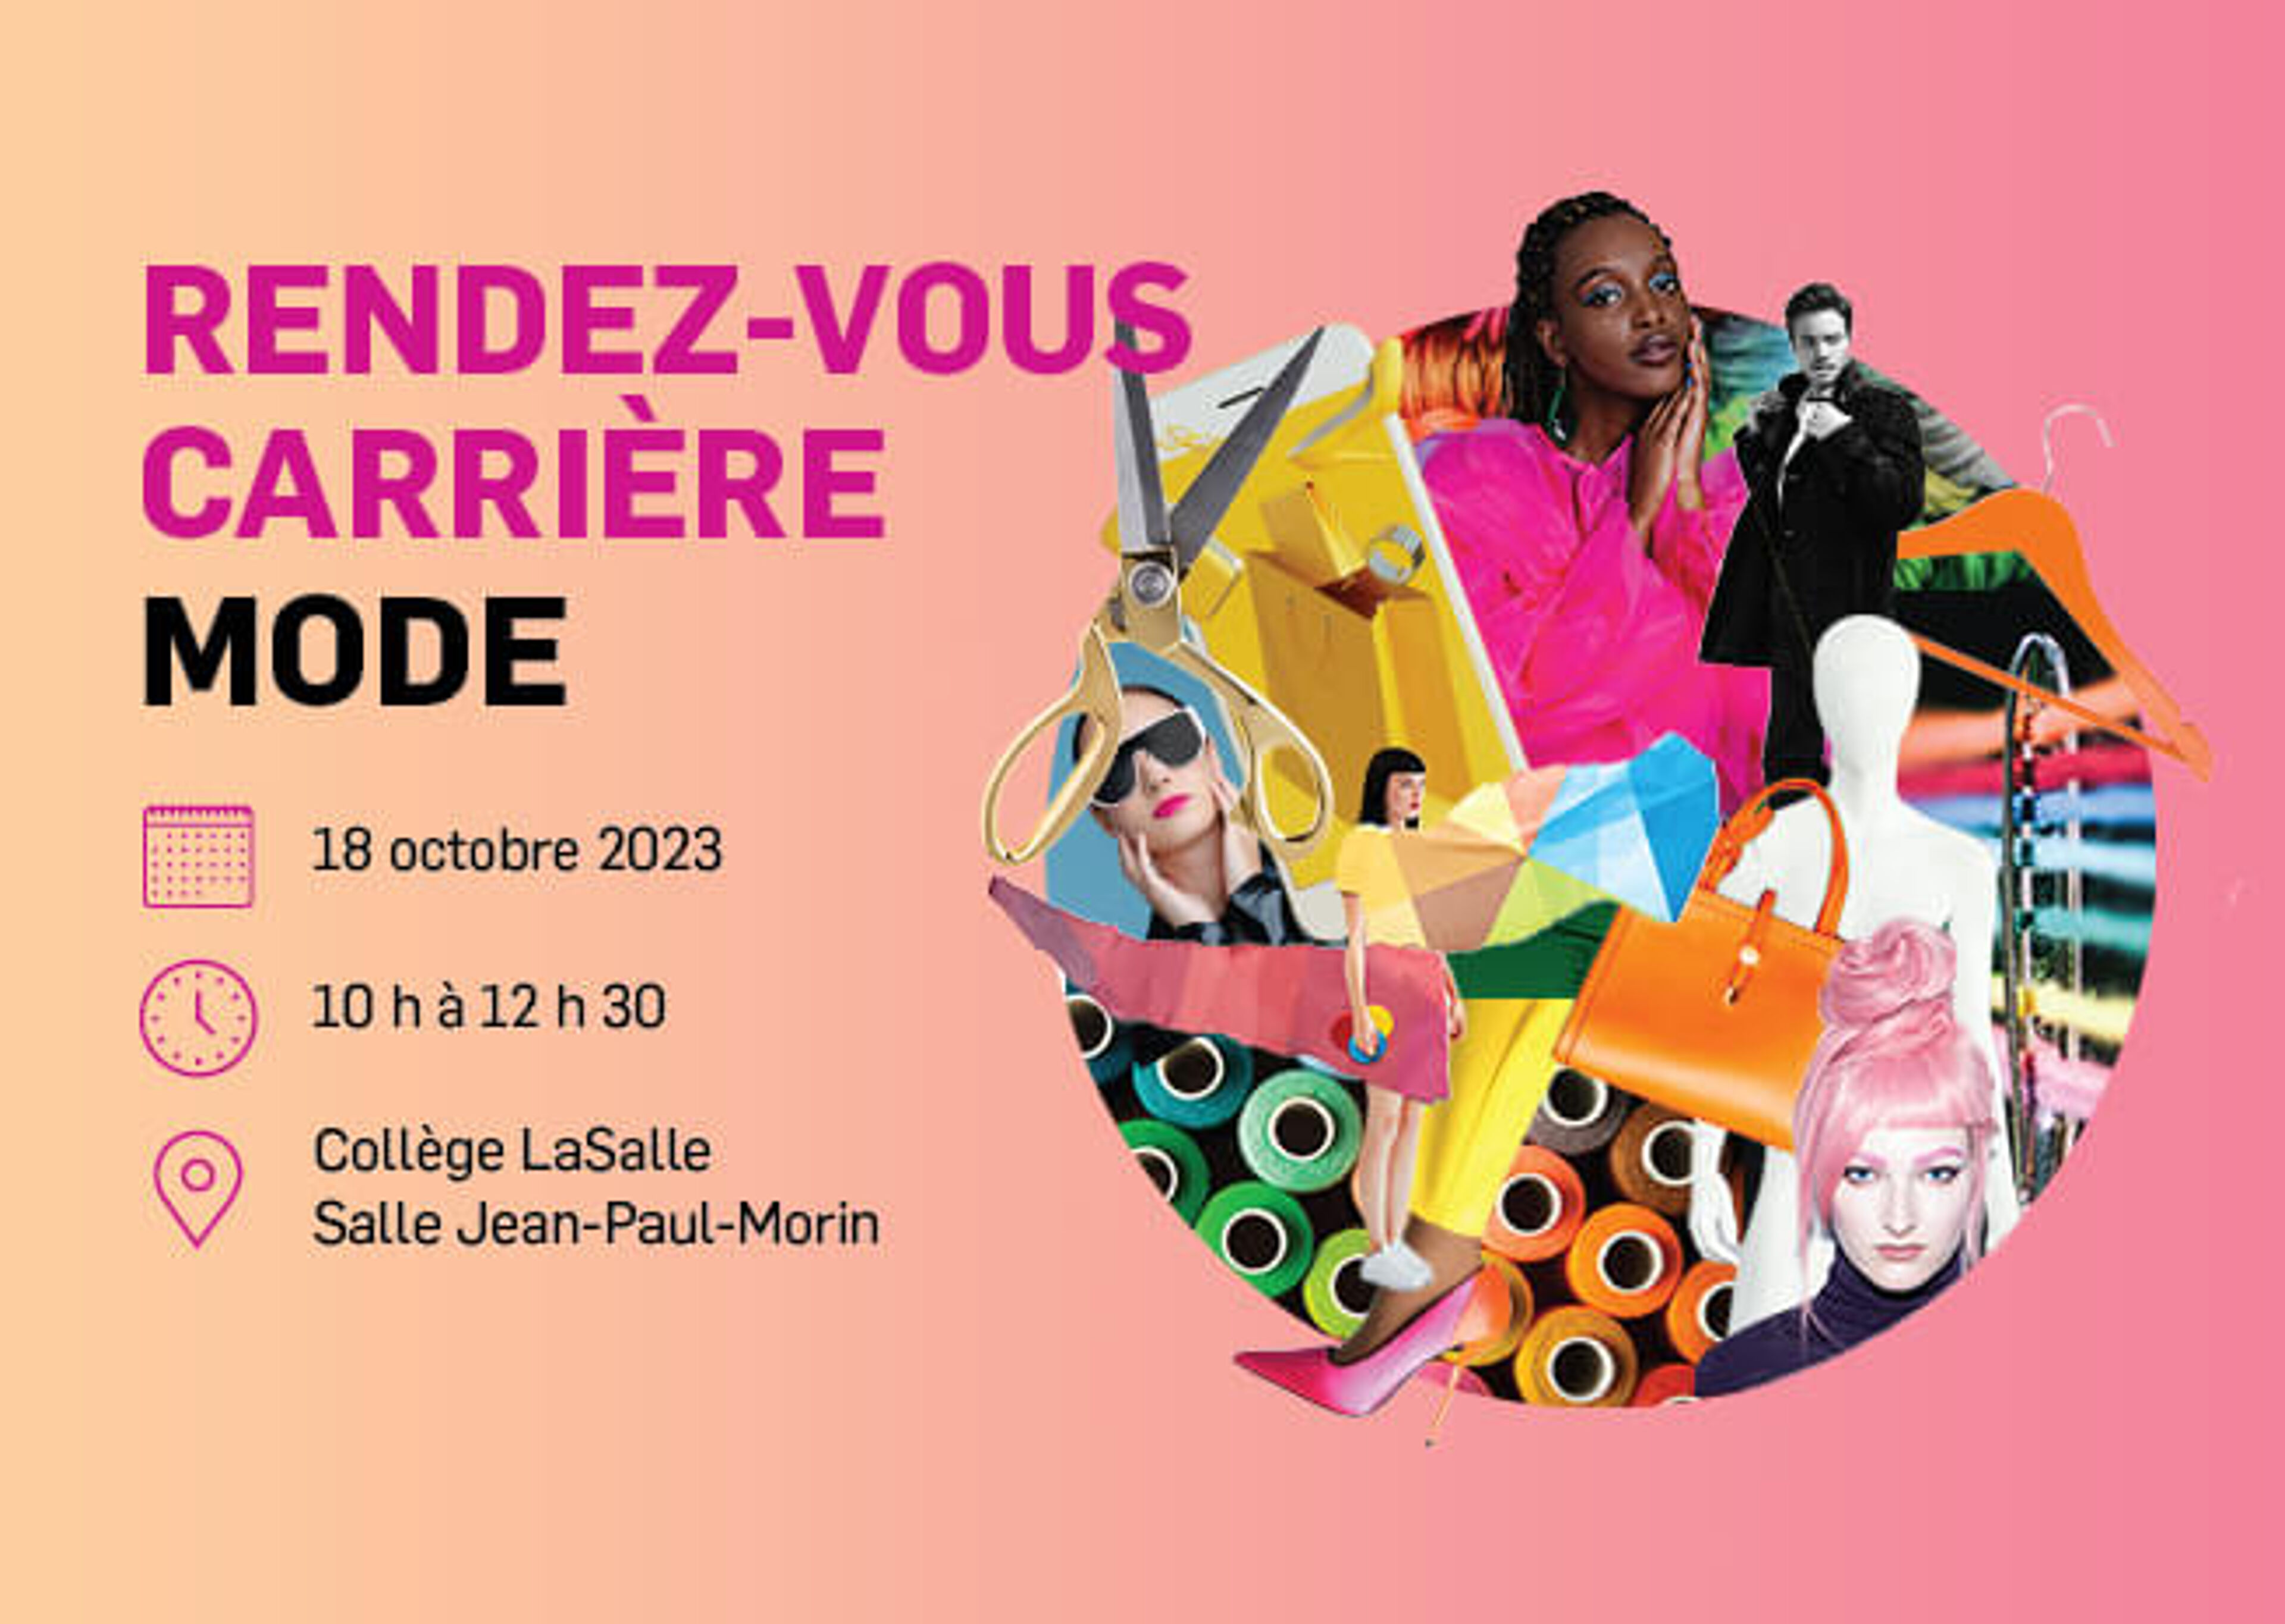 Une annonce dynamique pour un meetup de carrière de mode le 18 octobre 2023, au Collège LaSalle, avec des images liées à la mode.